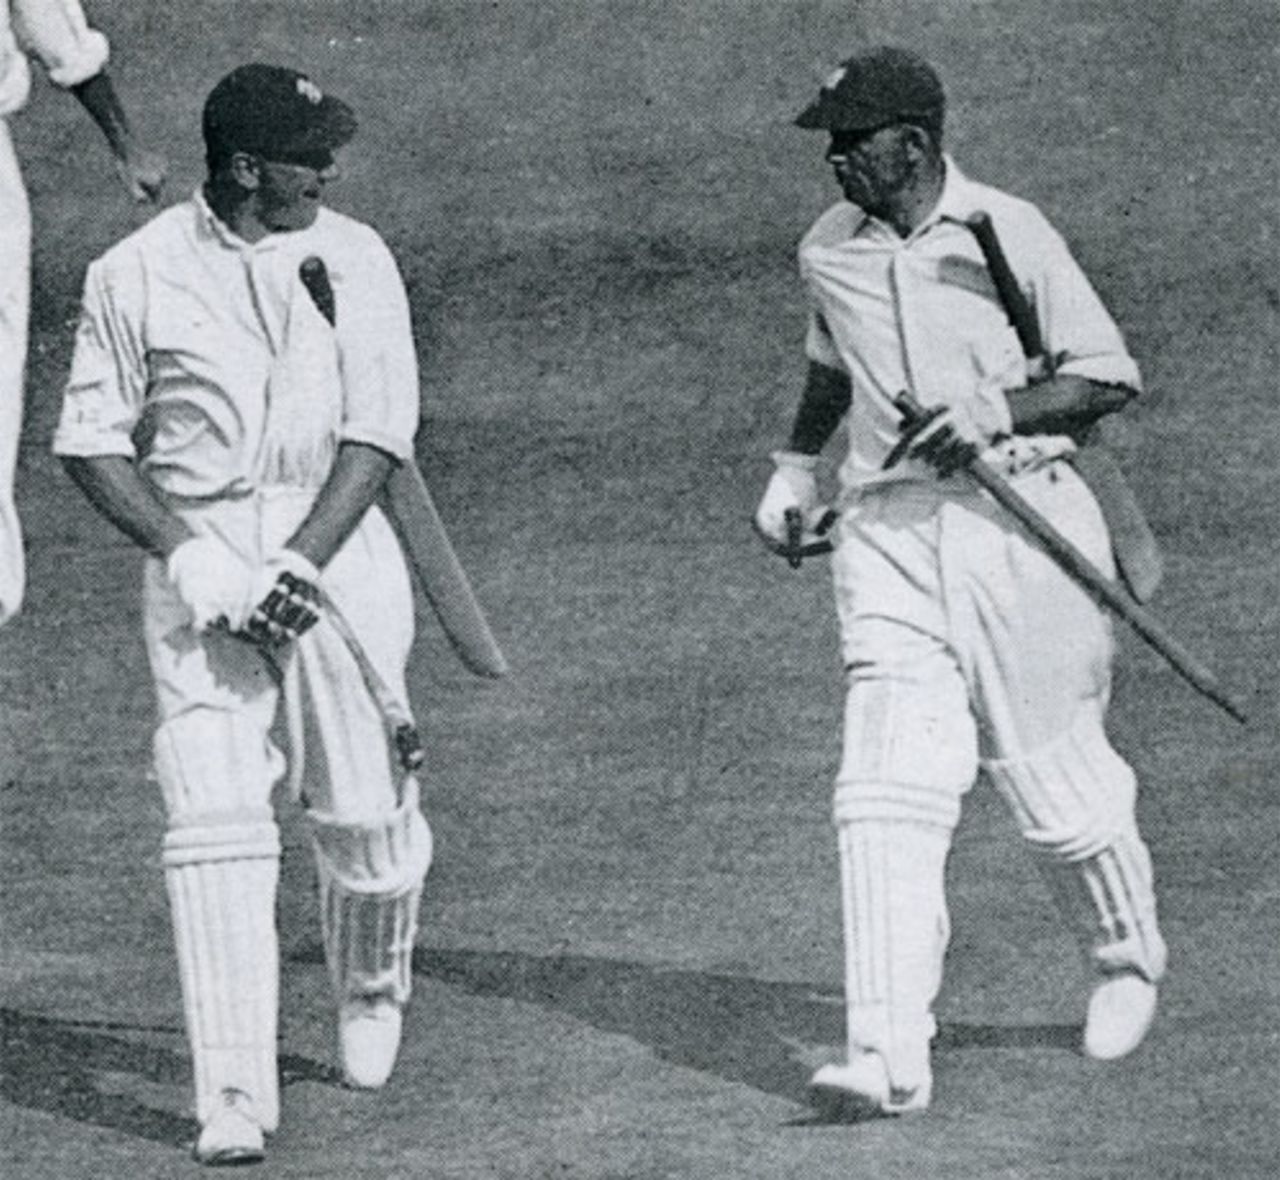 Wally Hammond and Bob Wyatt head off after winning the fifth Test, Australia v England, 5th Test, Sydney, February 28, 1933